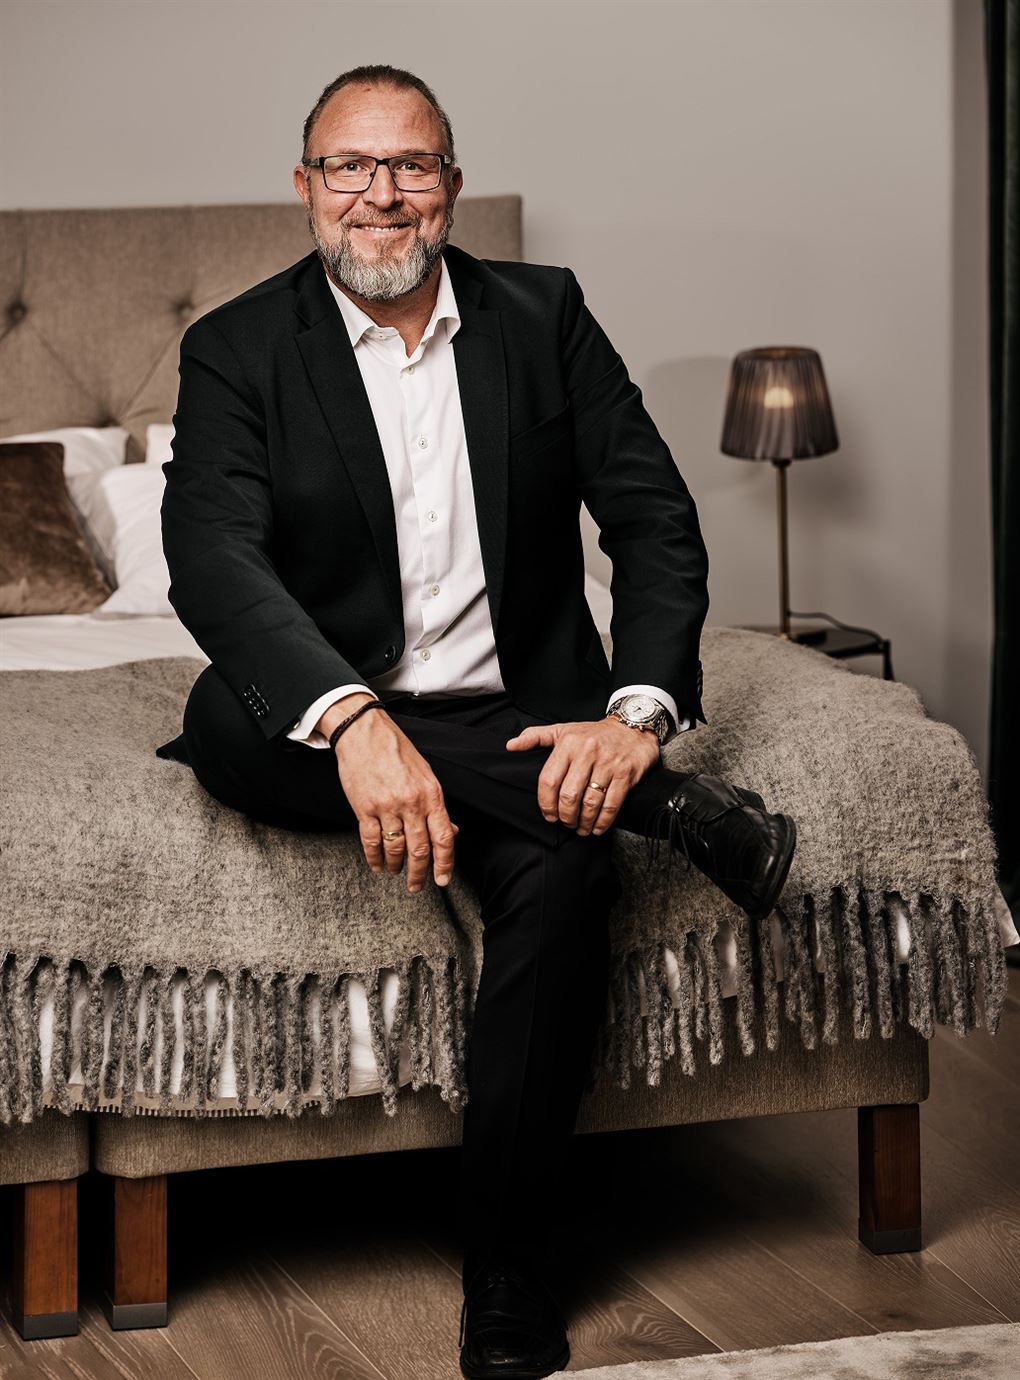 Grundlæggeren af YouBed Matias Sörensen sidder på en seng og smiler